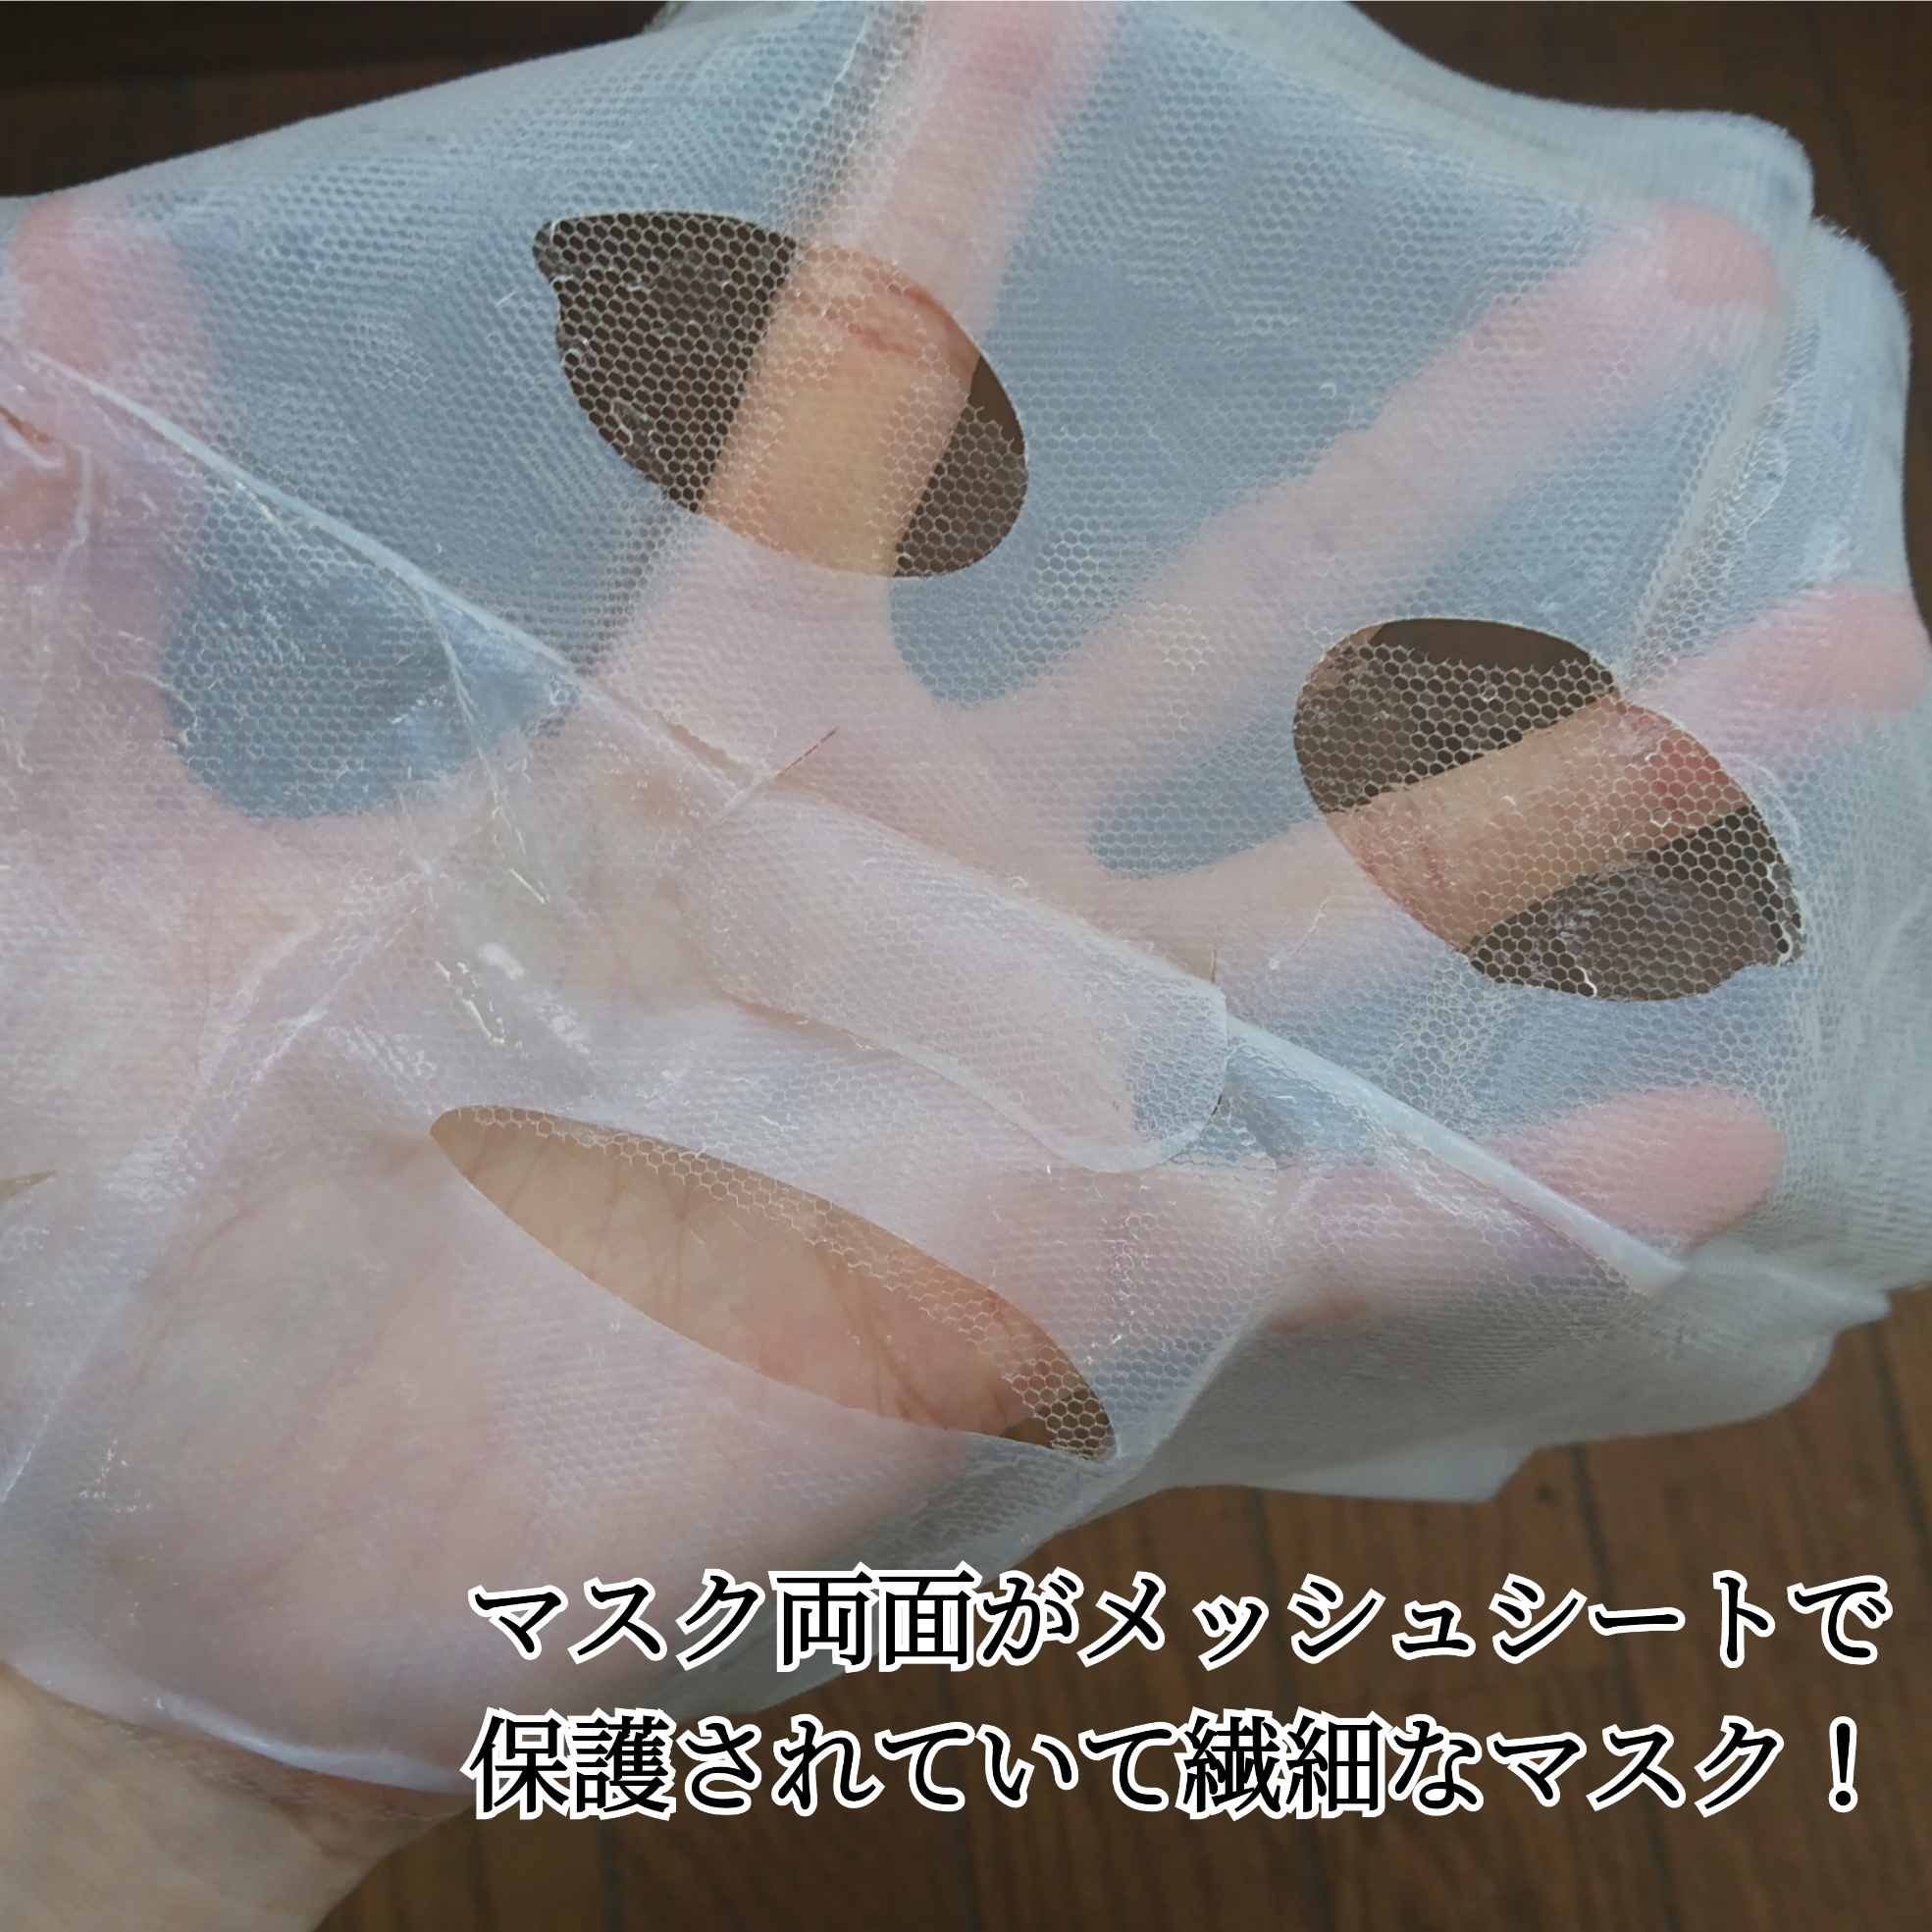 ULTIA バック エイジングケア マスクを使ったYuKaRi♡さんのクチコミ画像5